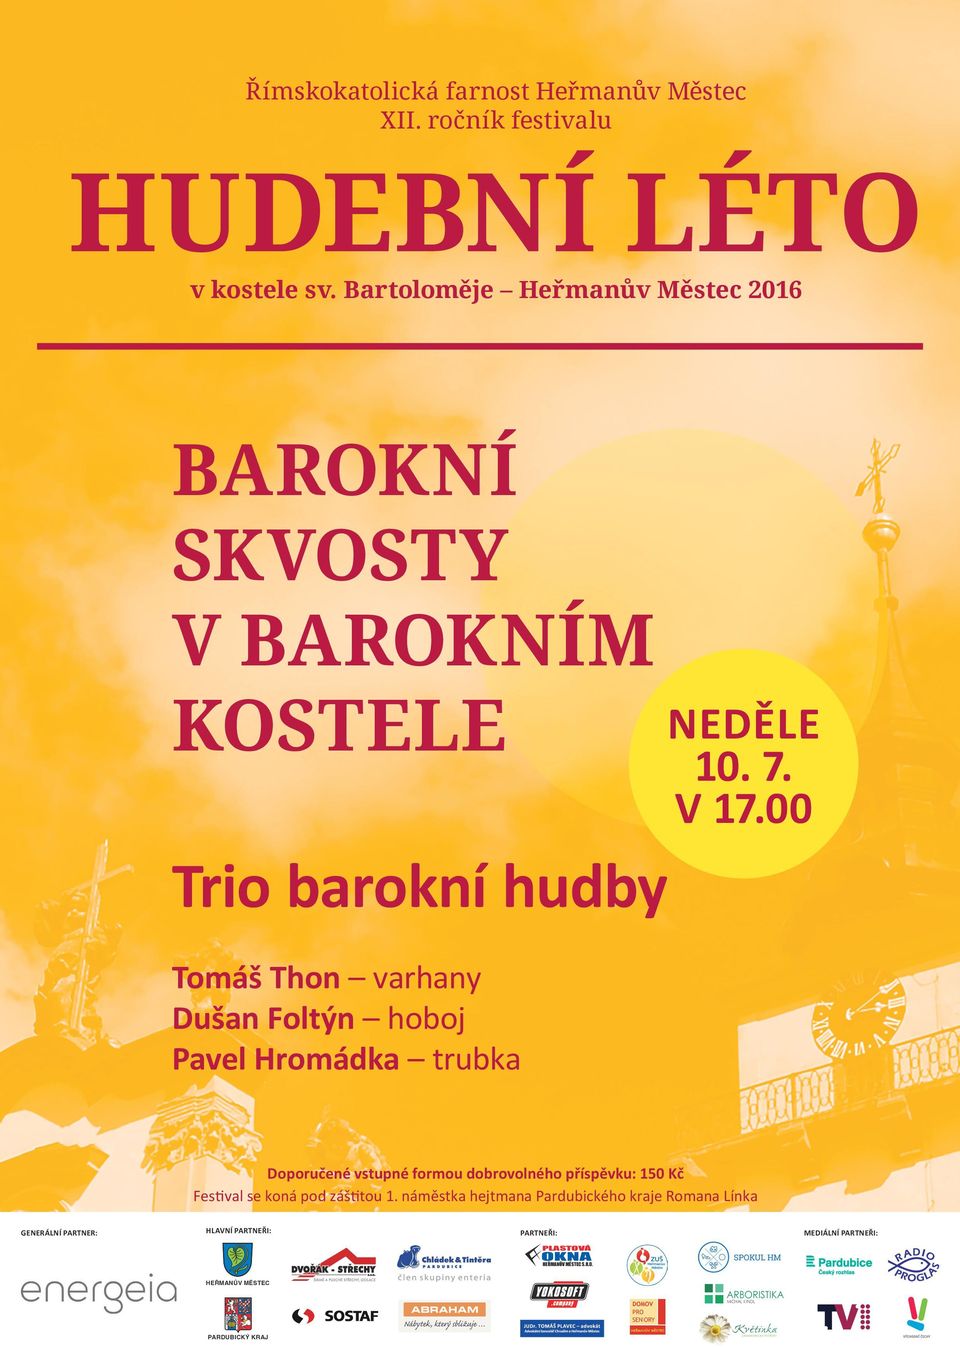 Trio barokní hudby Tomáš Thon